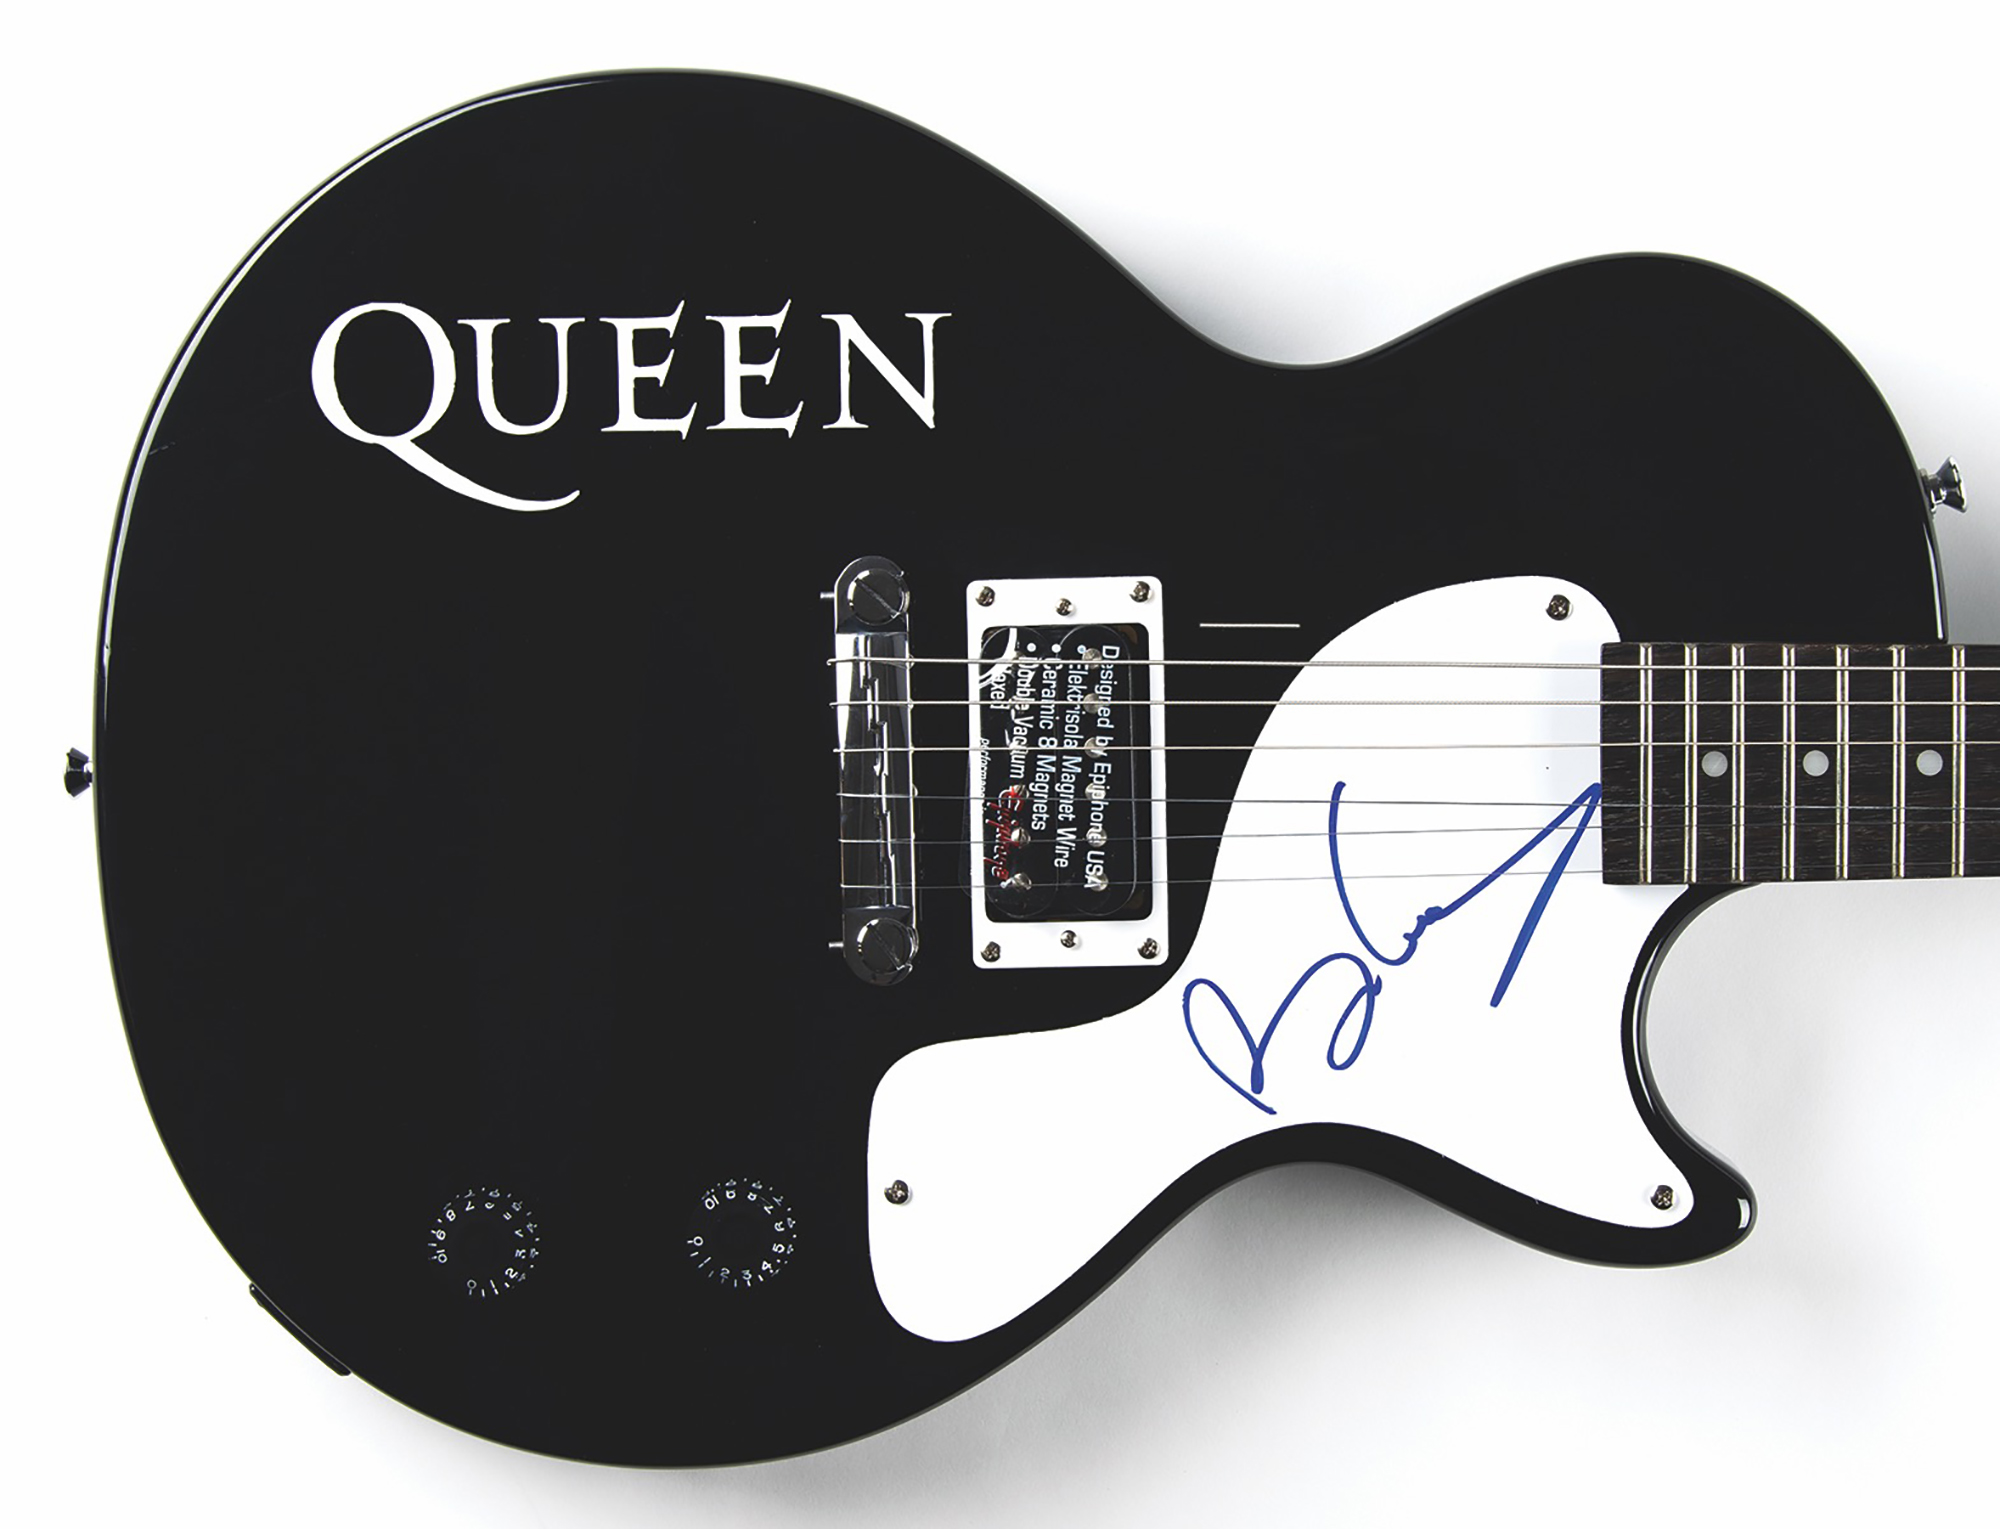 Lot #2164 Brian May Signed Guitar - Image 2